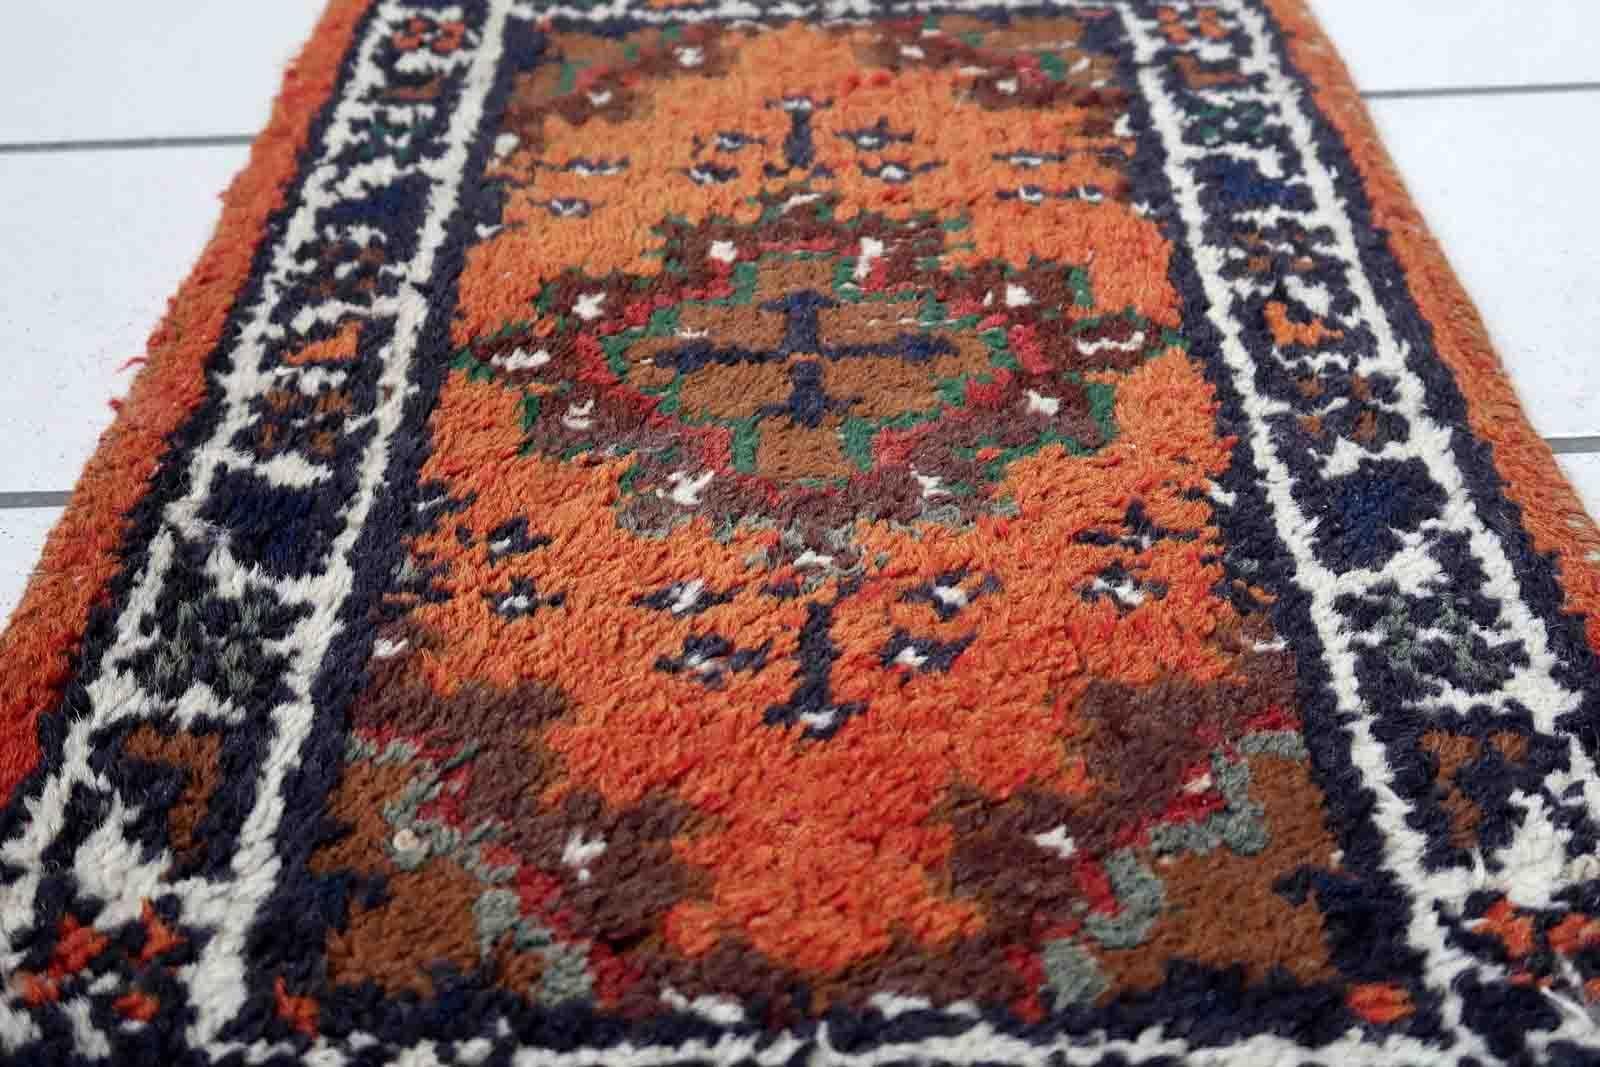 Handgefertigter Vintage-Teppich aus dem Nahen Osten mit traditionellem Medaillonmuster. Der Teppich wurde Ende des 20. Jahrhunderts aus Wolle hergestellt. Es ist im Originalzustand, hat einige niedrige Flor.

-zustand: original, etwas niedriger